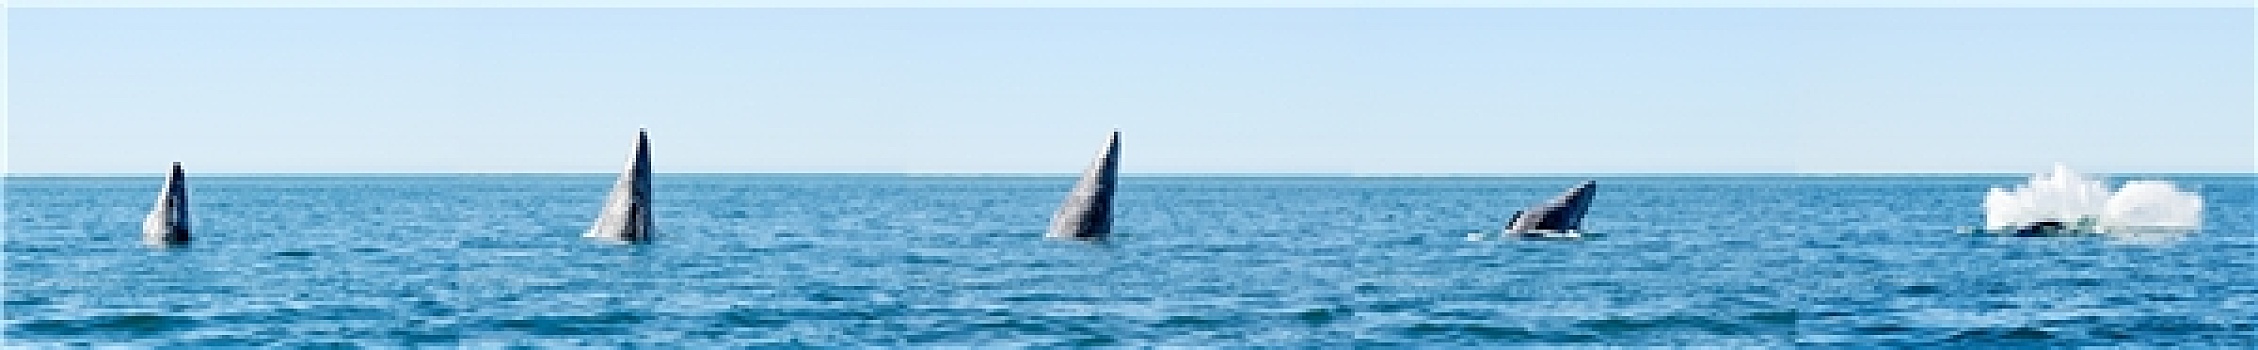 观鲸